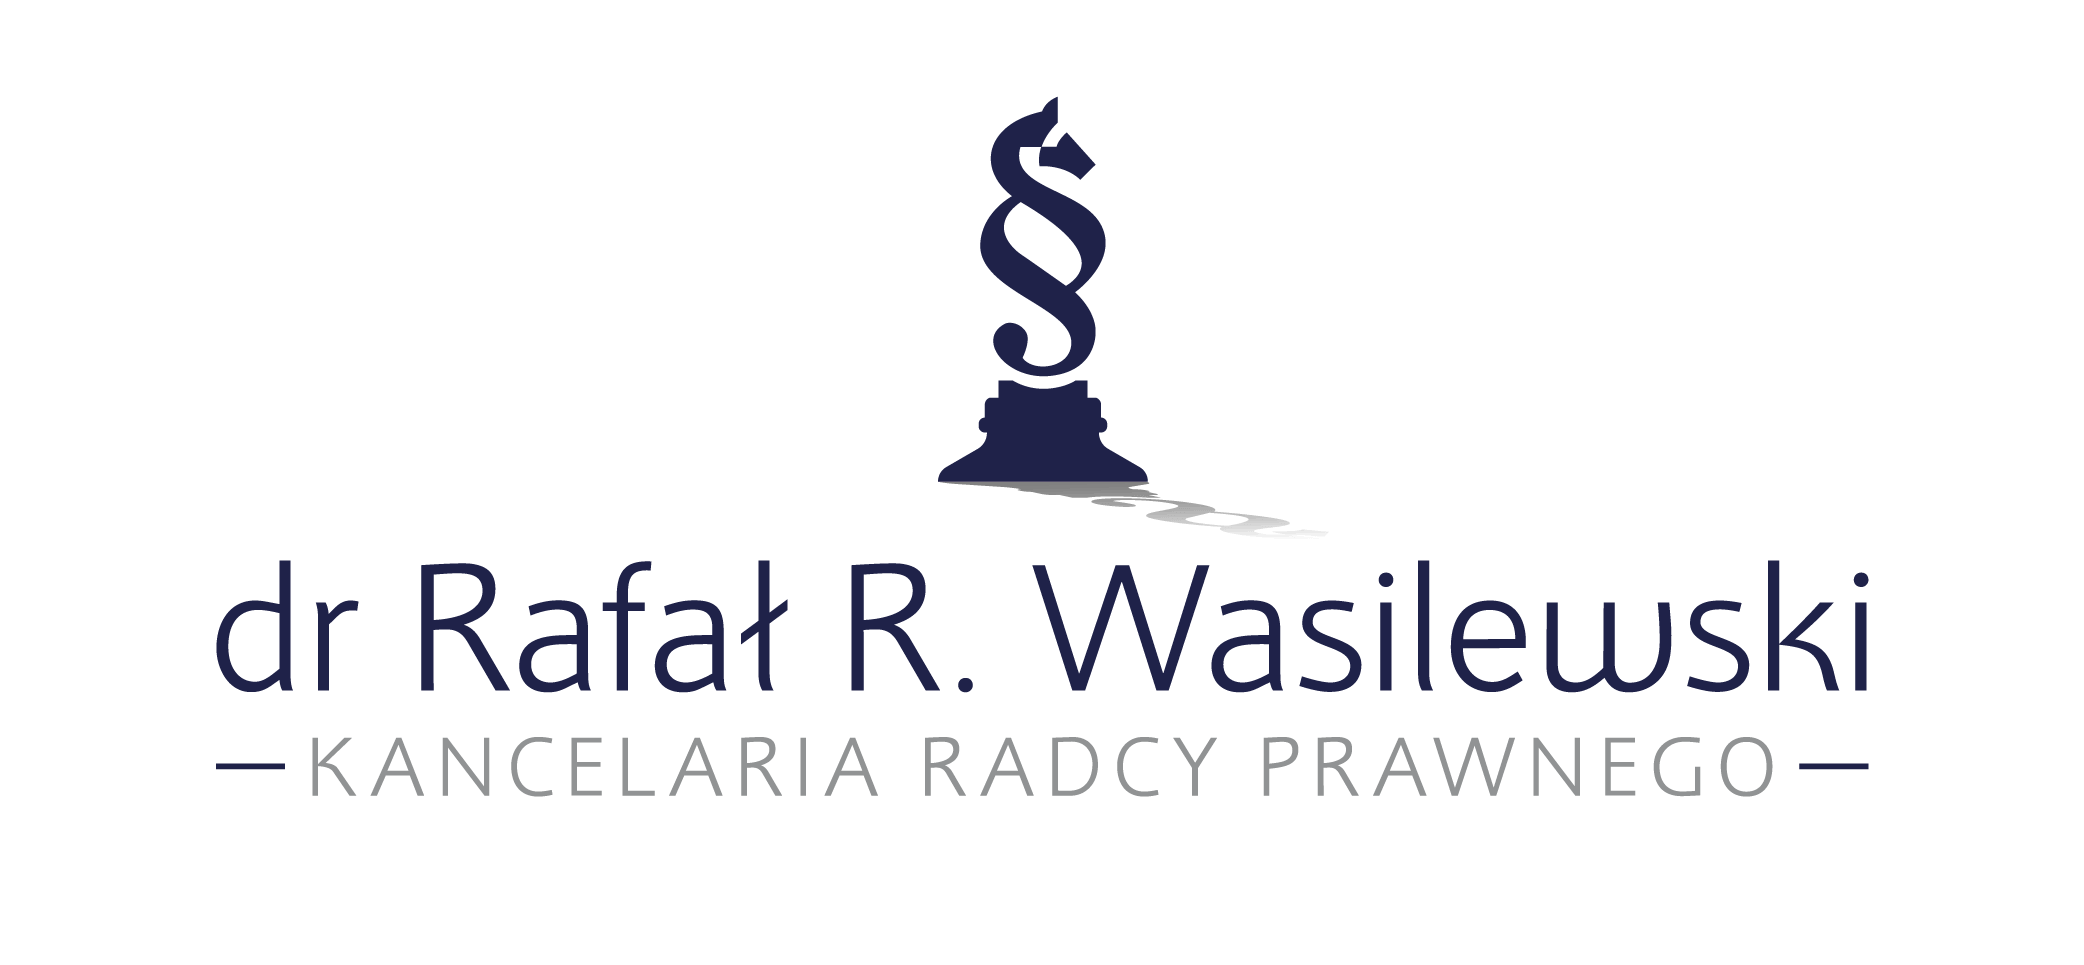 Winner Image - Kancelaria Radcy Prawnego dr Rafał R. Wasilewski